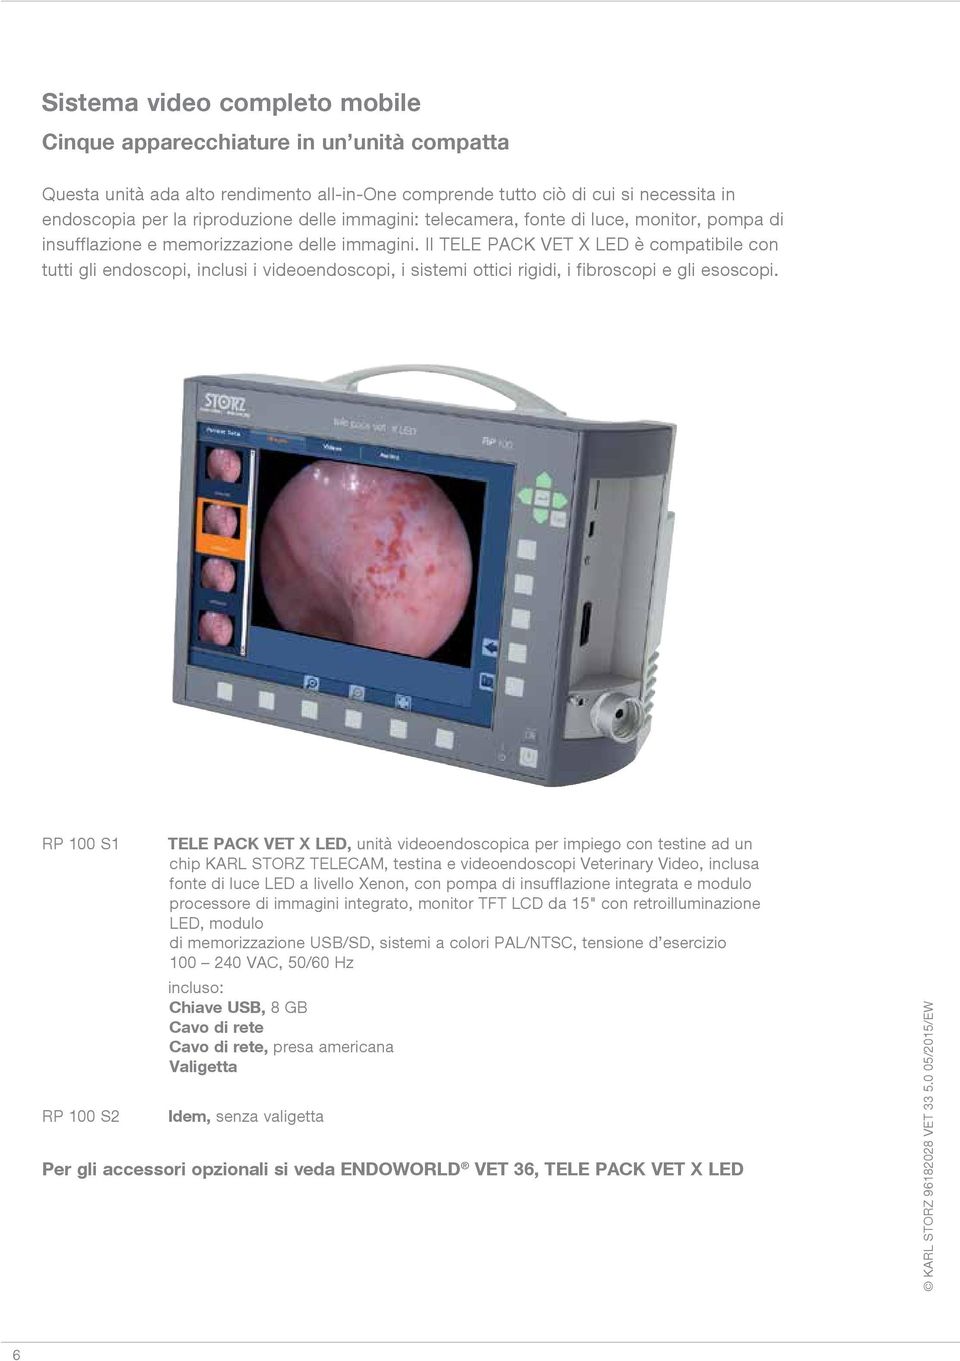 Il TELE PACK VET X LED è compatibile con tutti gli endoscopi, inclusi i videoendoscopi, i sistemi ottici rigidi, i fibroscopi e gli esoscopi.